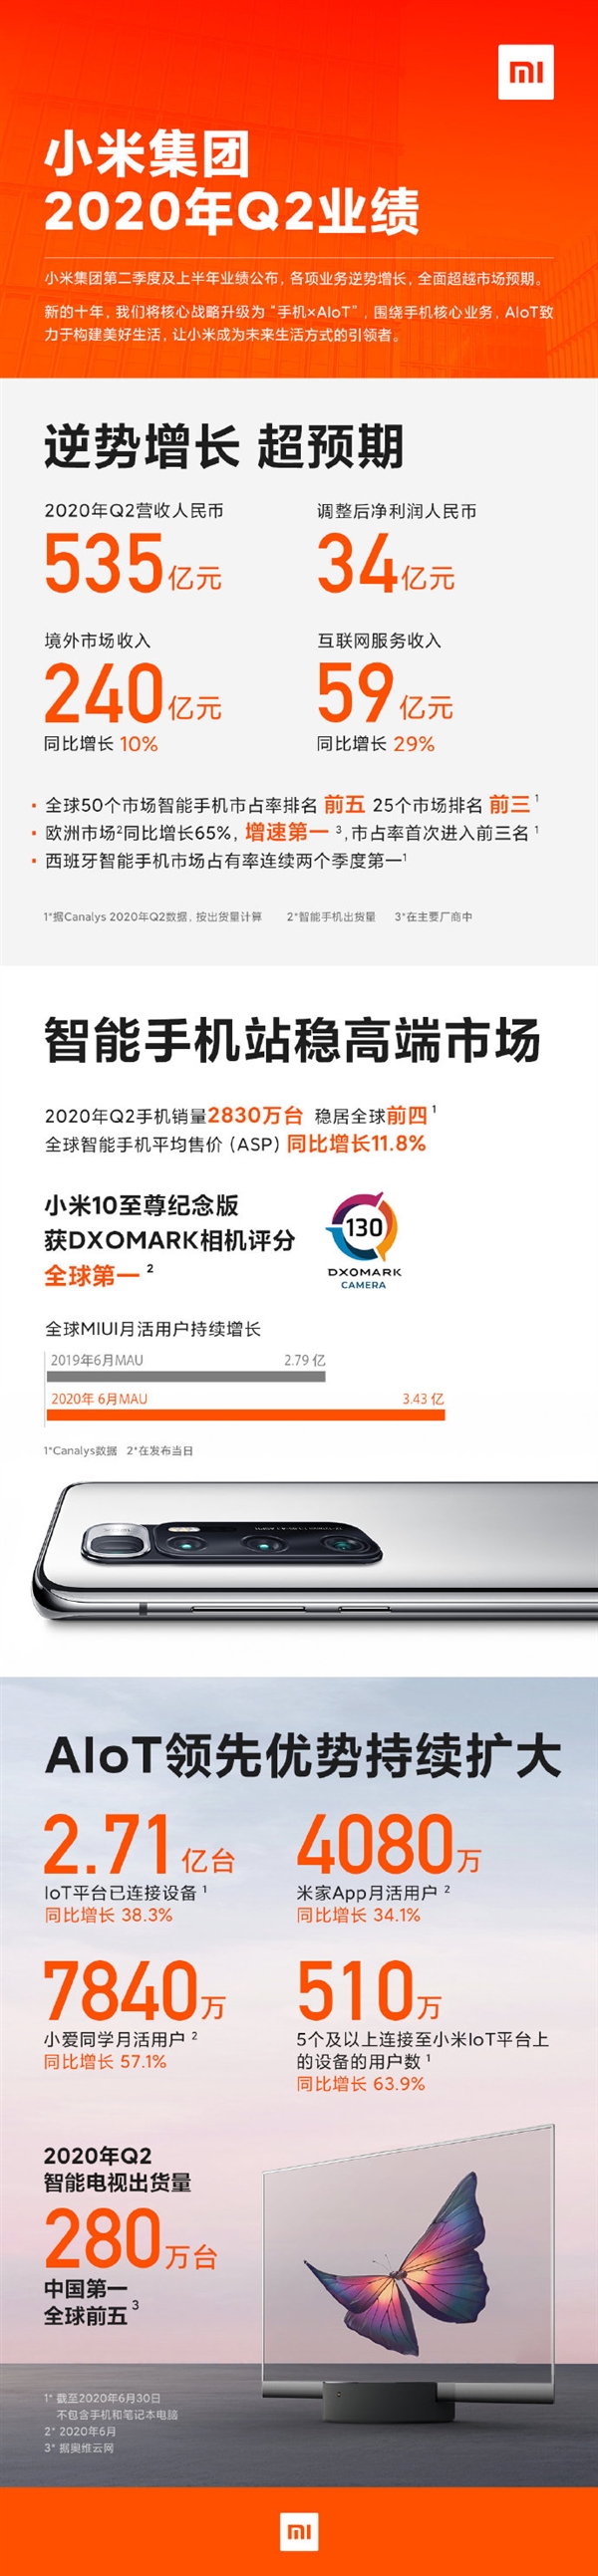 小米发布Q2财报：营收535亿元、智能手机出货2830万部